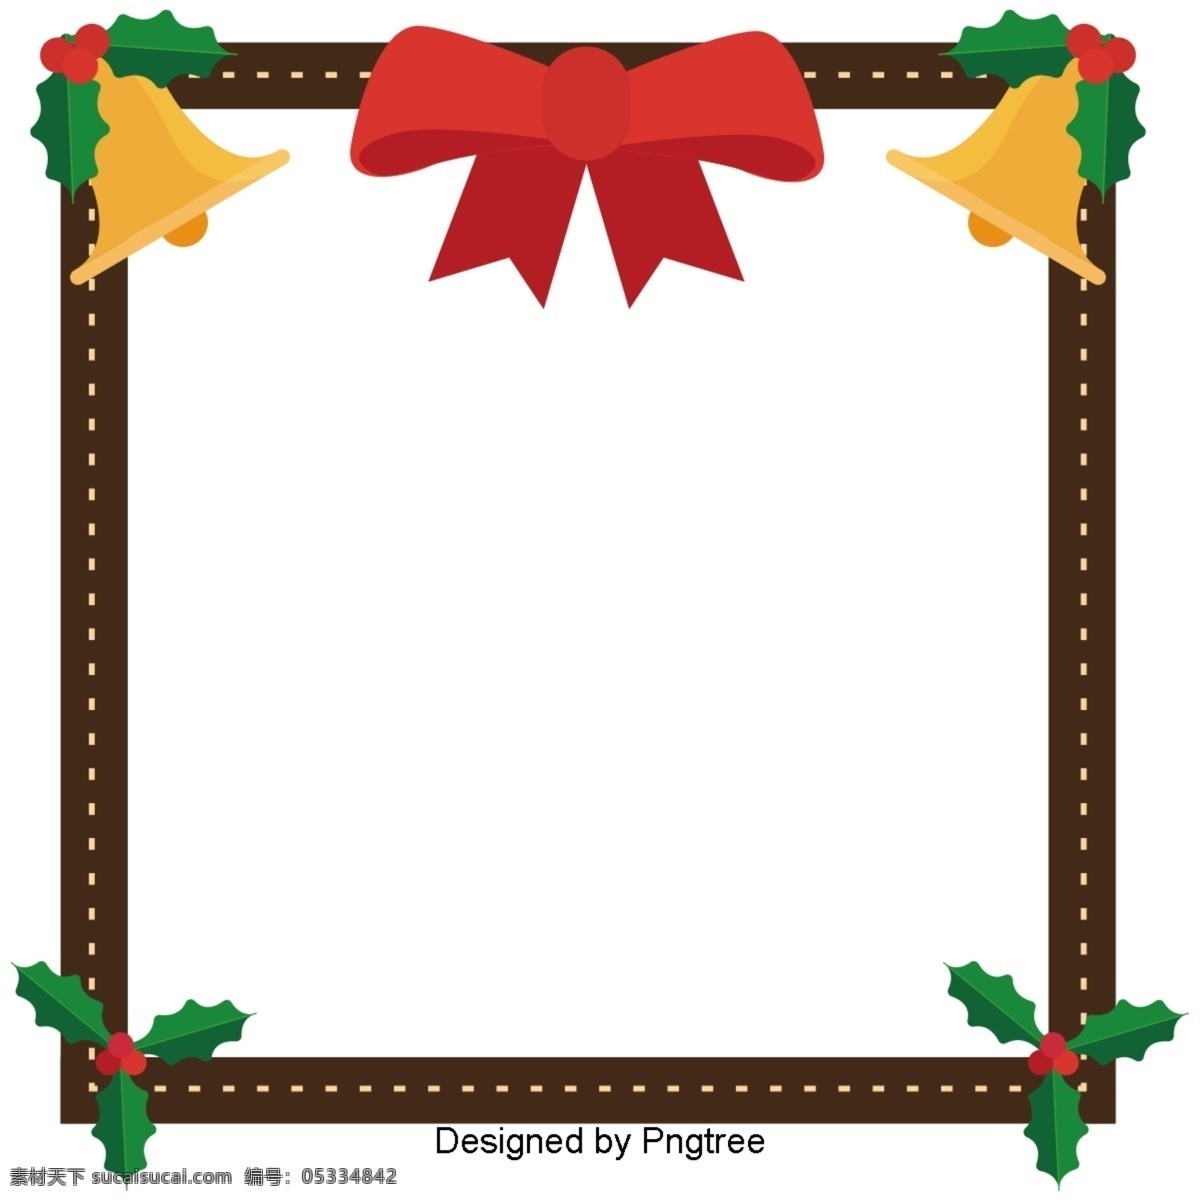 简单 的卡 通 布朗 铃铛 装饰 圣诞 边界 圣诞节 框 极 简 主义 卡通 轮廓 可爱 蝴蝶结